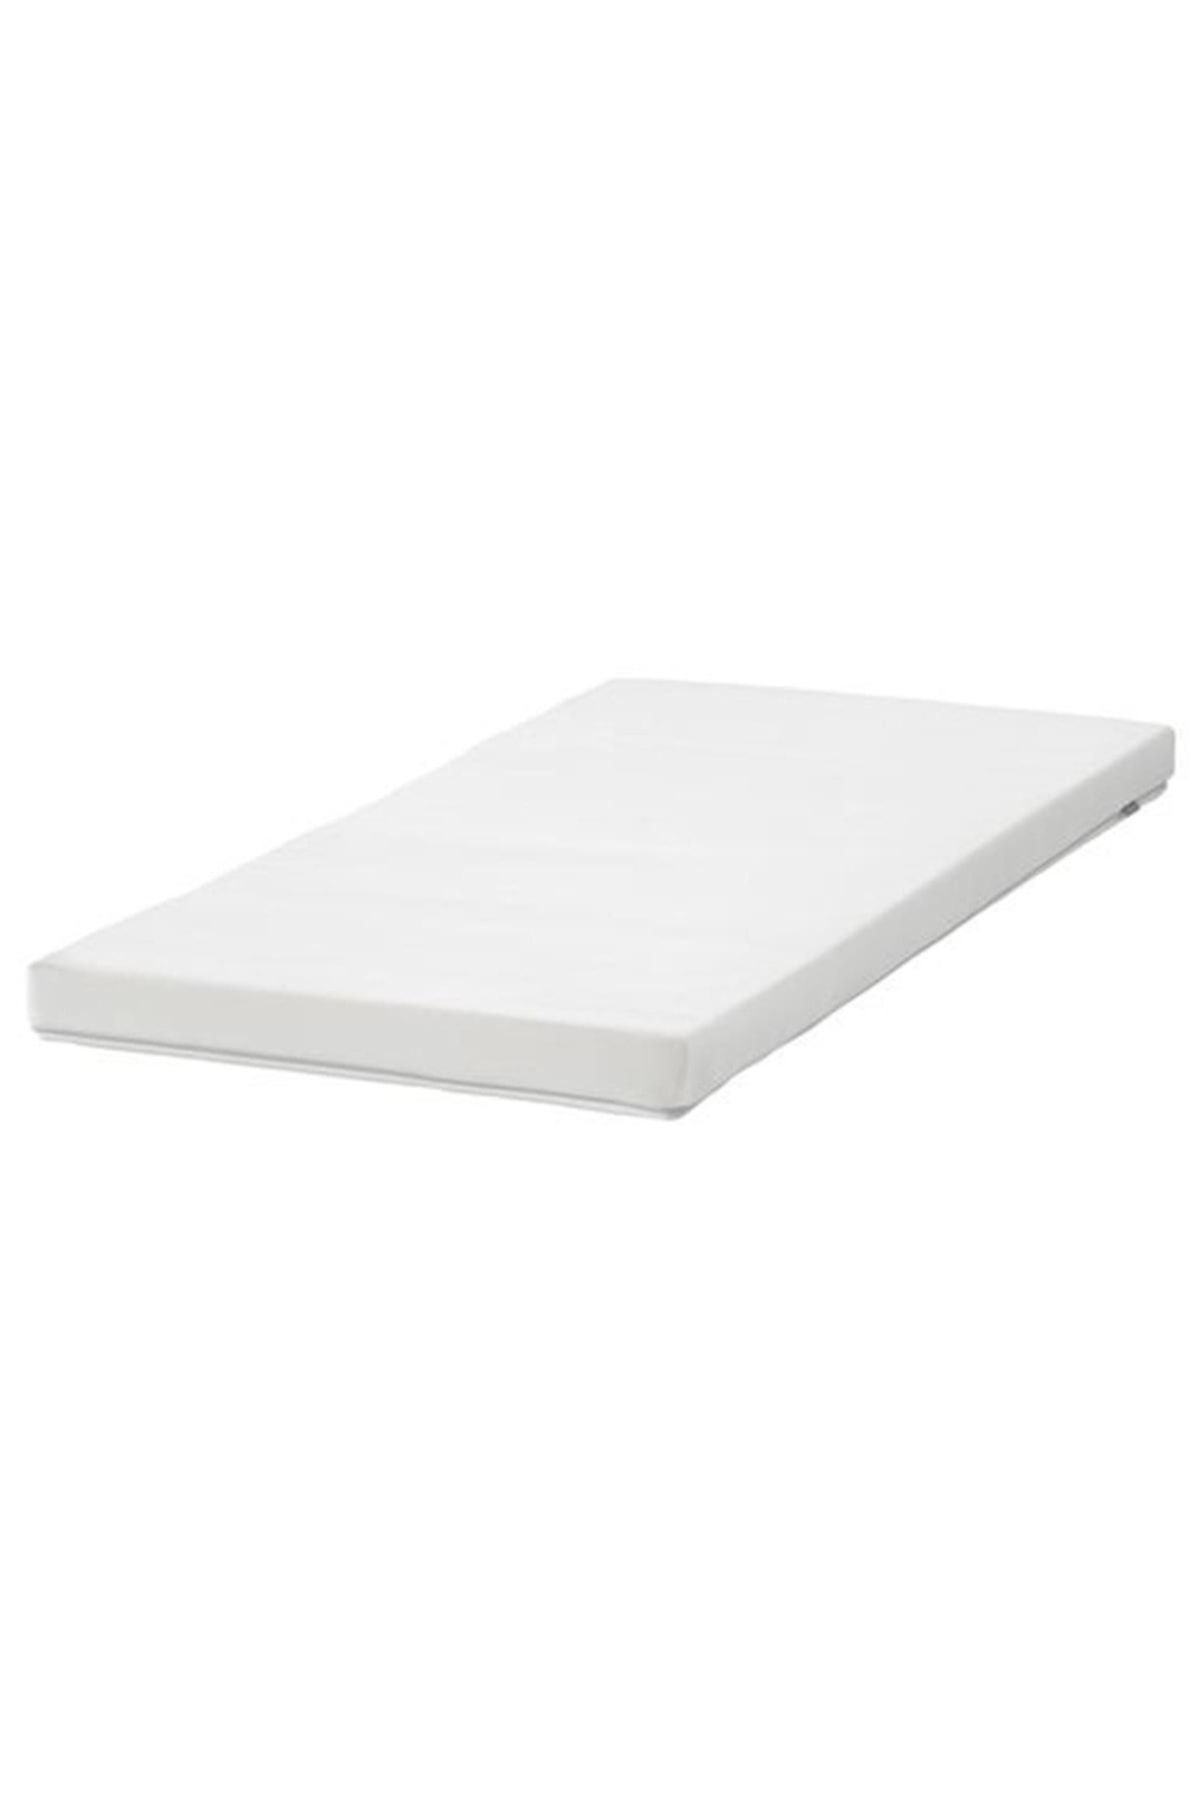 IKEA Pelleplutt Bebek Yatağı Beyaz 60x120 cm 6 cm